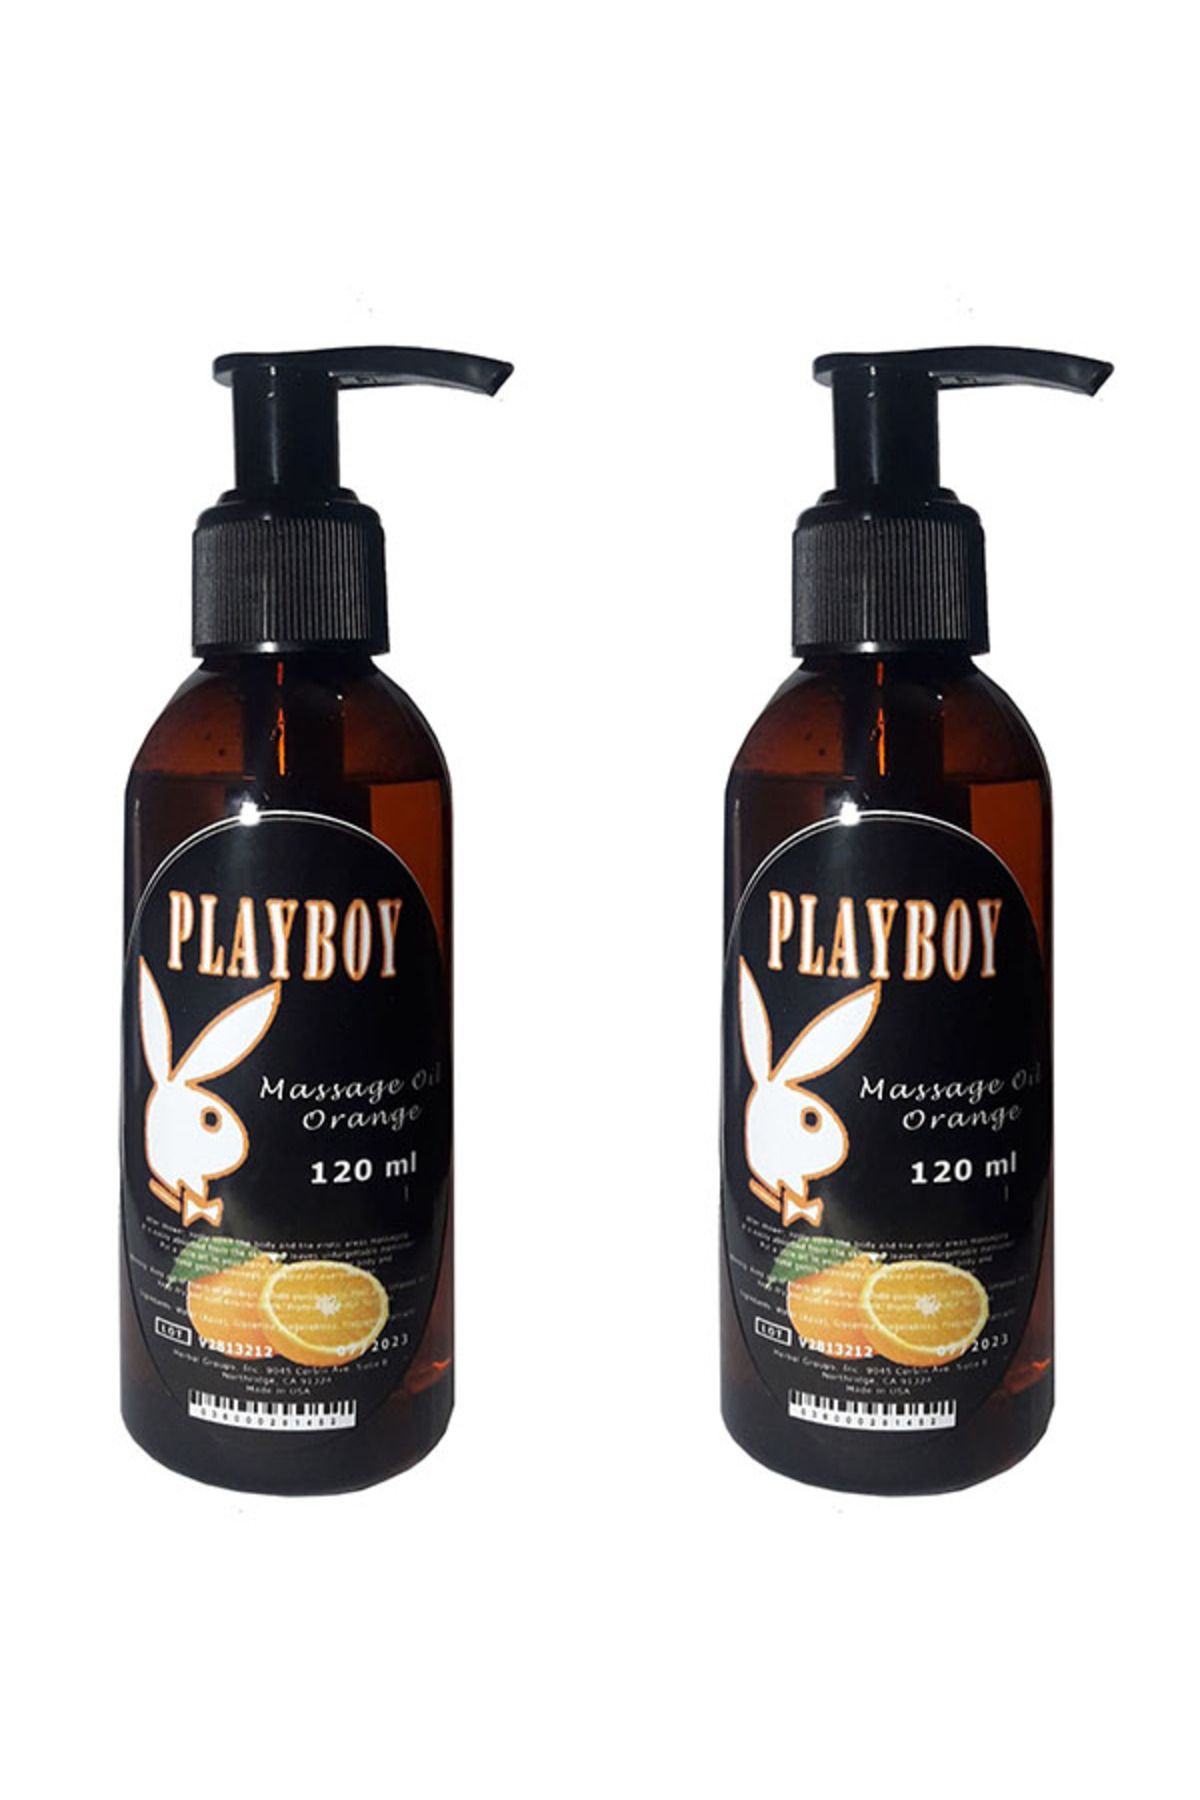 Playboy Portakal Aromalı Vücut Masaj Yağı 120 ml X 2